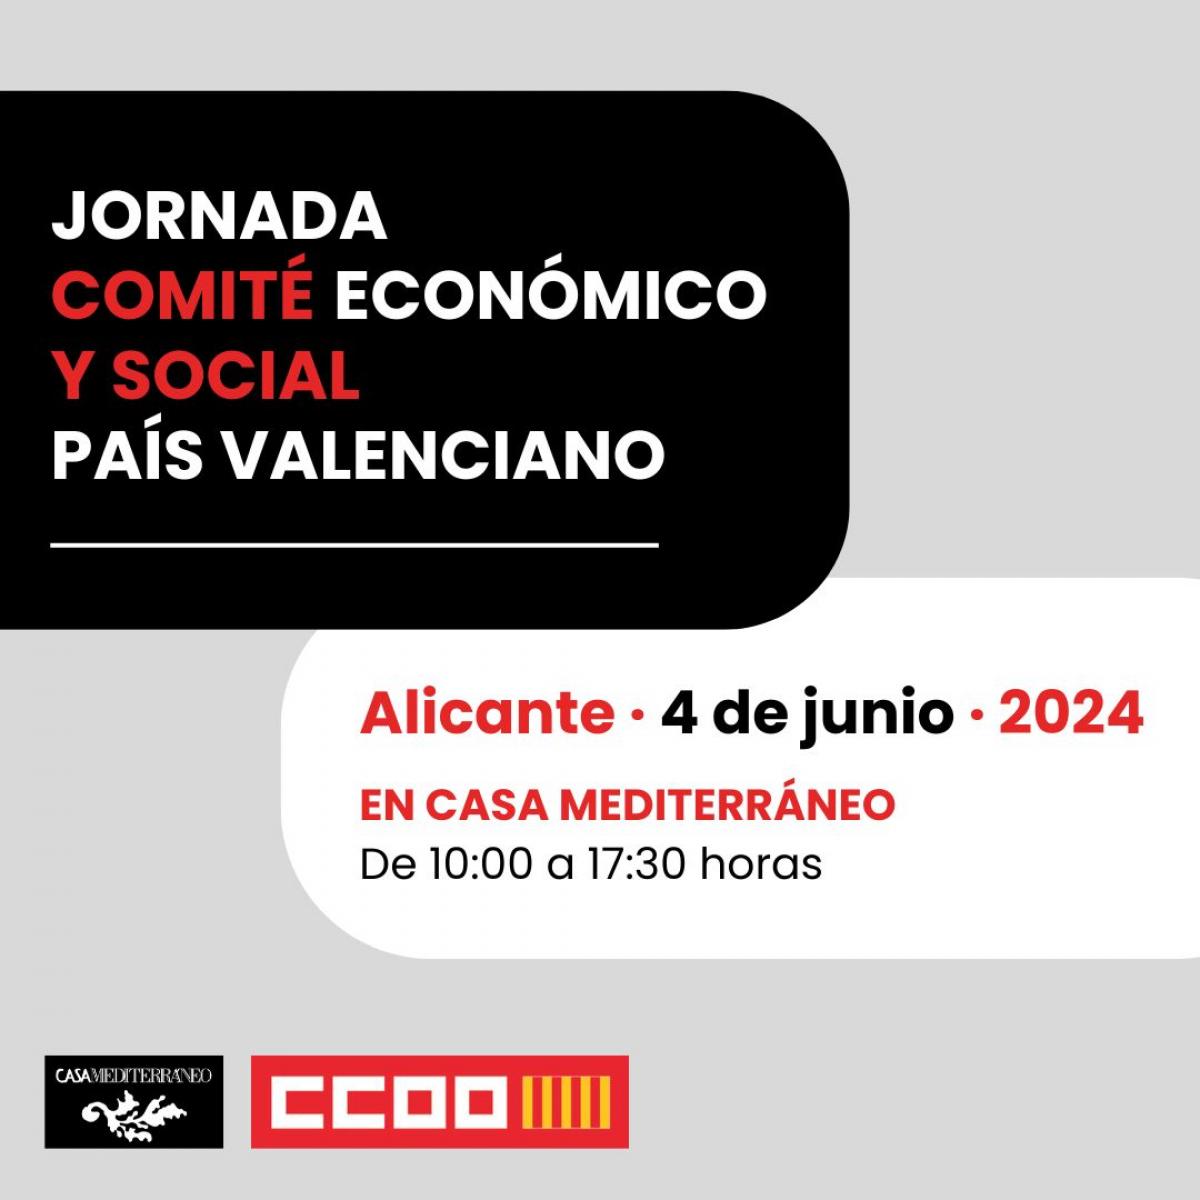 Jornada Comit Econmico y Social Pas Valenciano